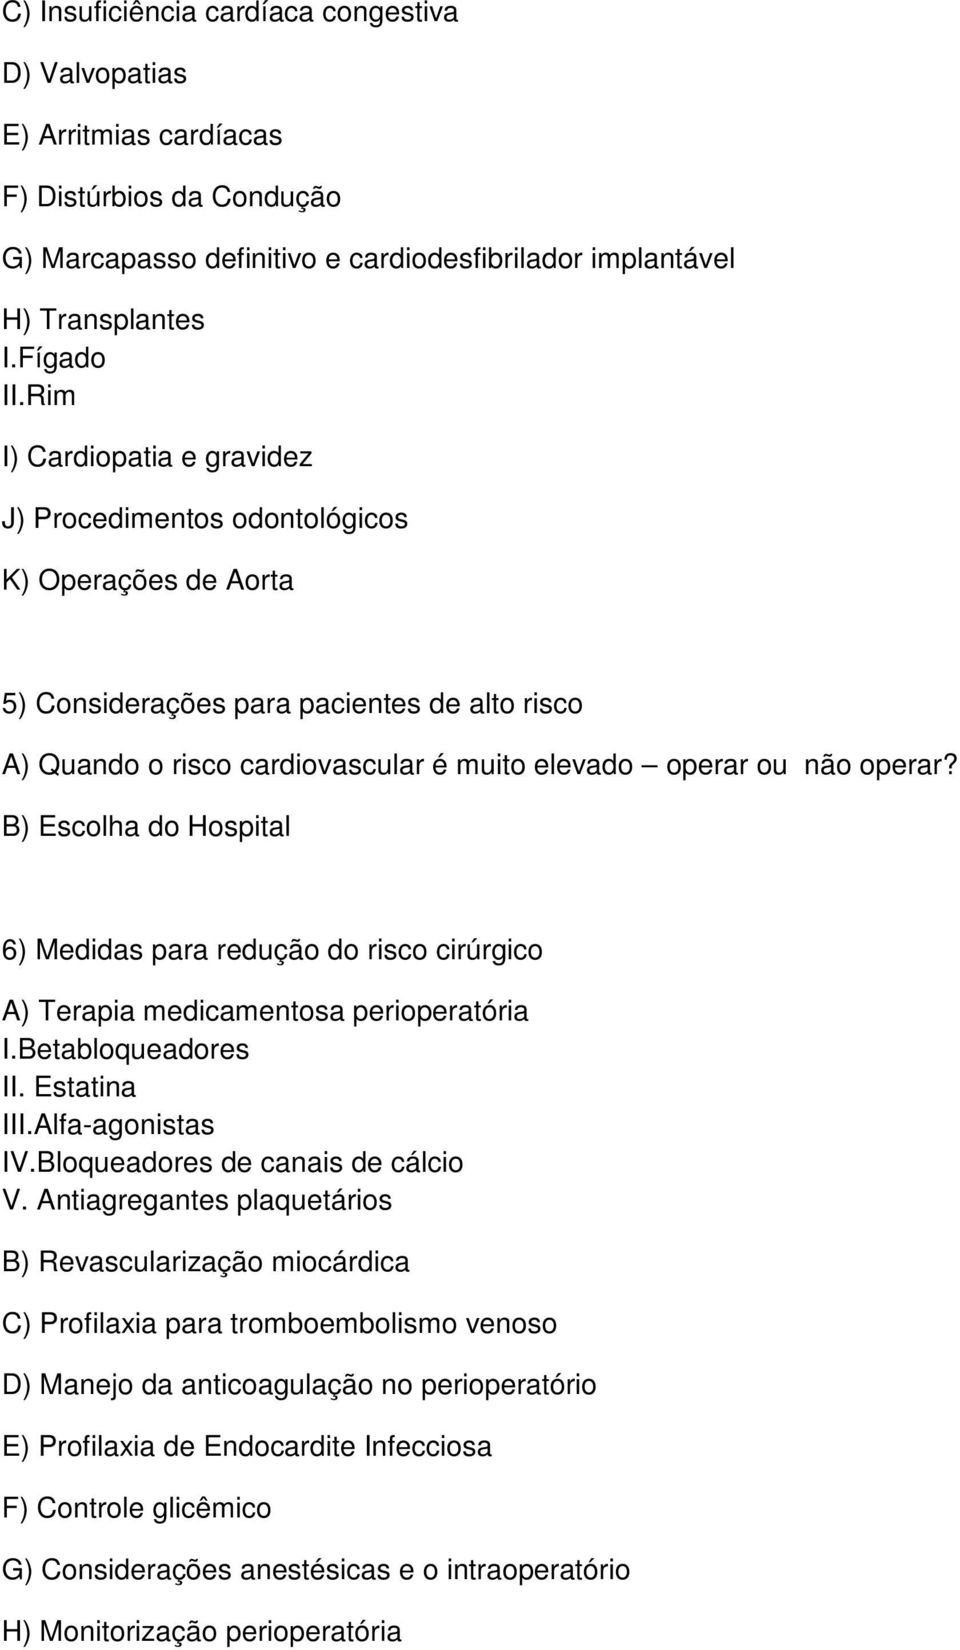 B) Escolha do Hospital 6) Medidas para redução do risco cirúrgico A) Terapia medicamentosa perioperatória I.Betabloqueadores II. Estatina III.Alfa-agonistas IV.Bloqueadores de canais de cálcio V.